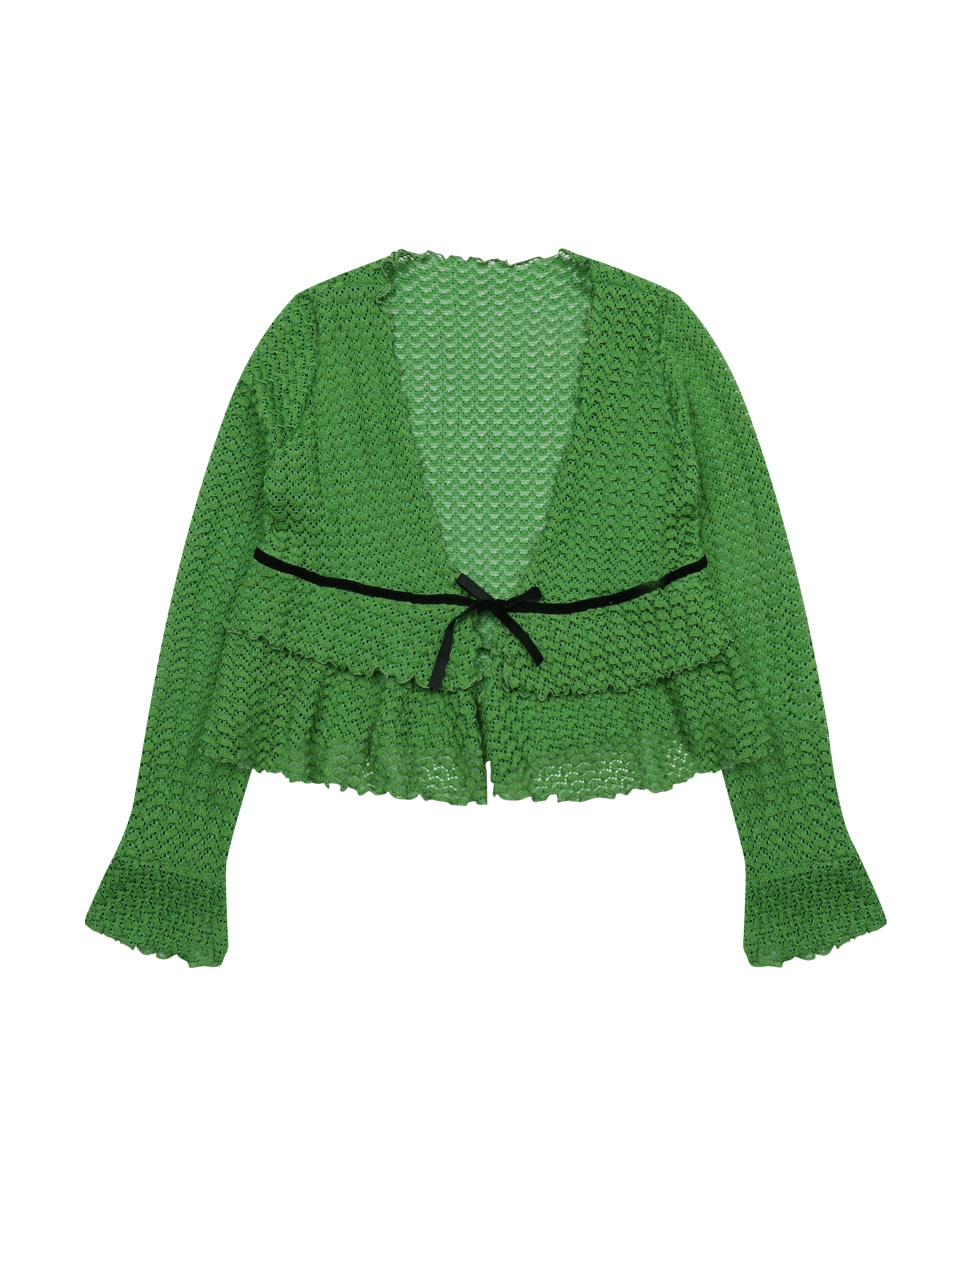 green ruffle cardigan